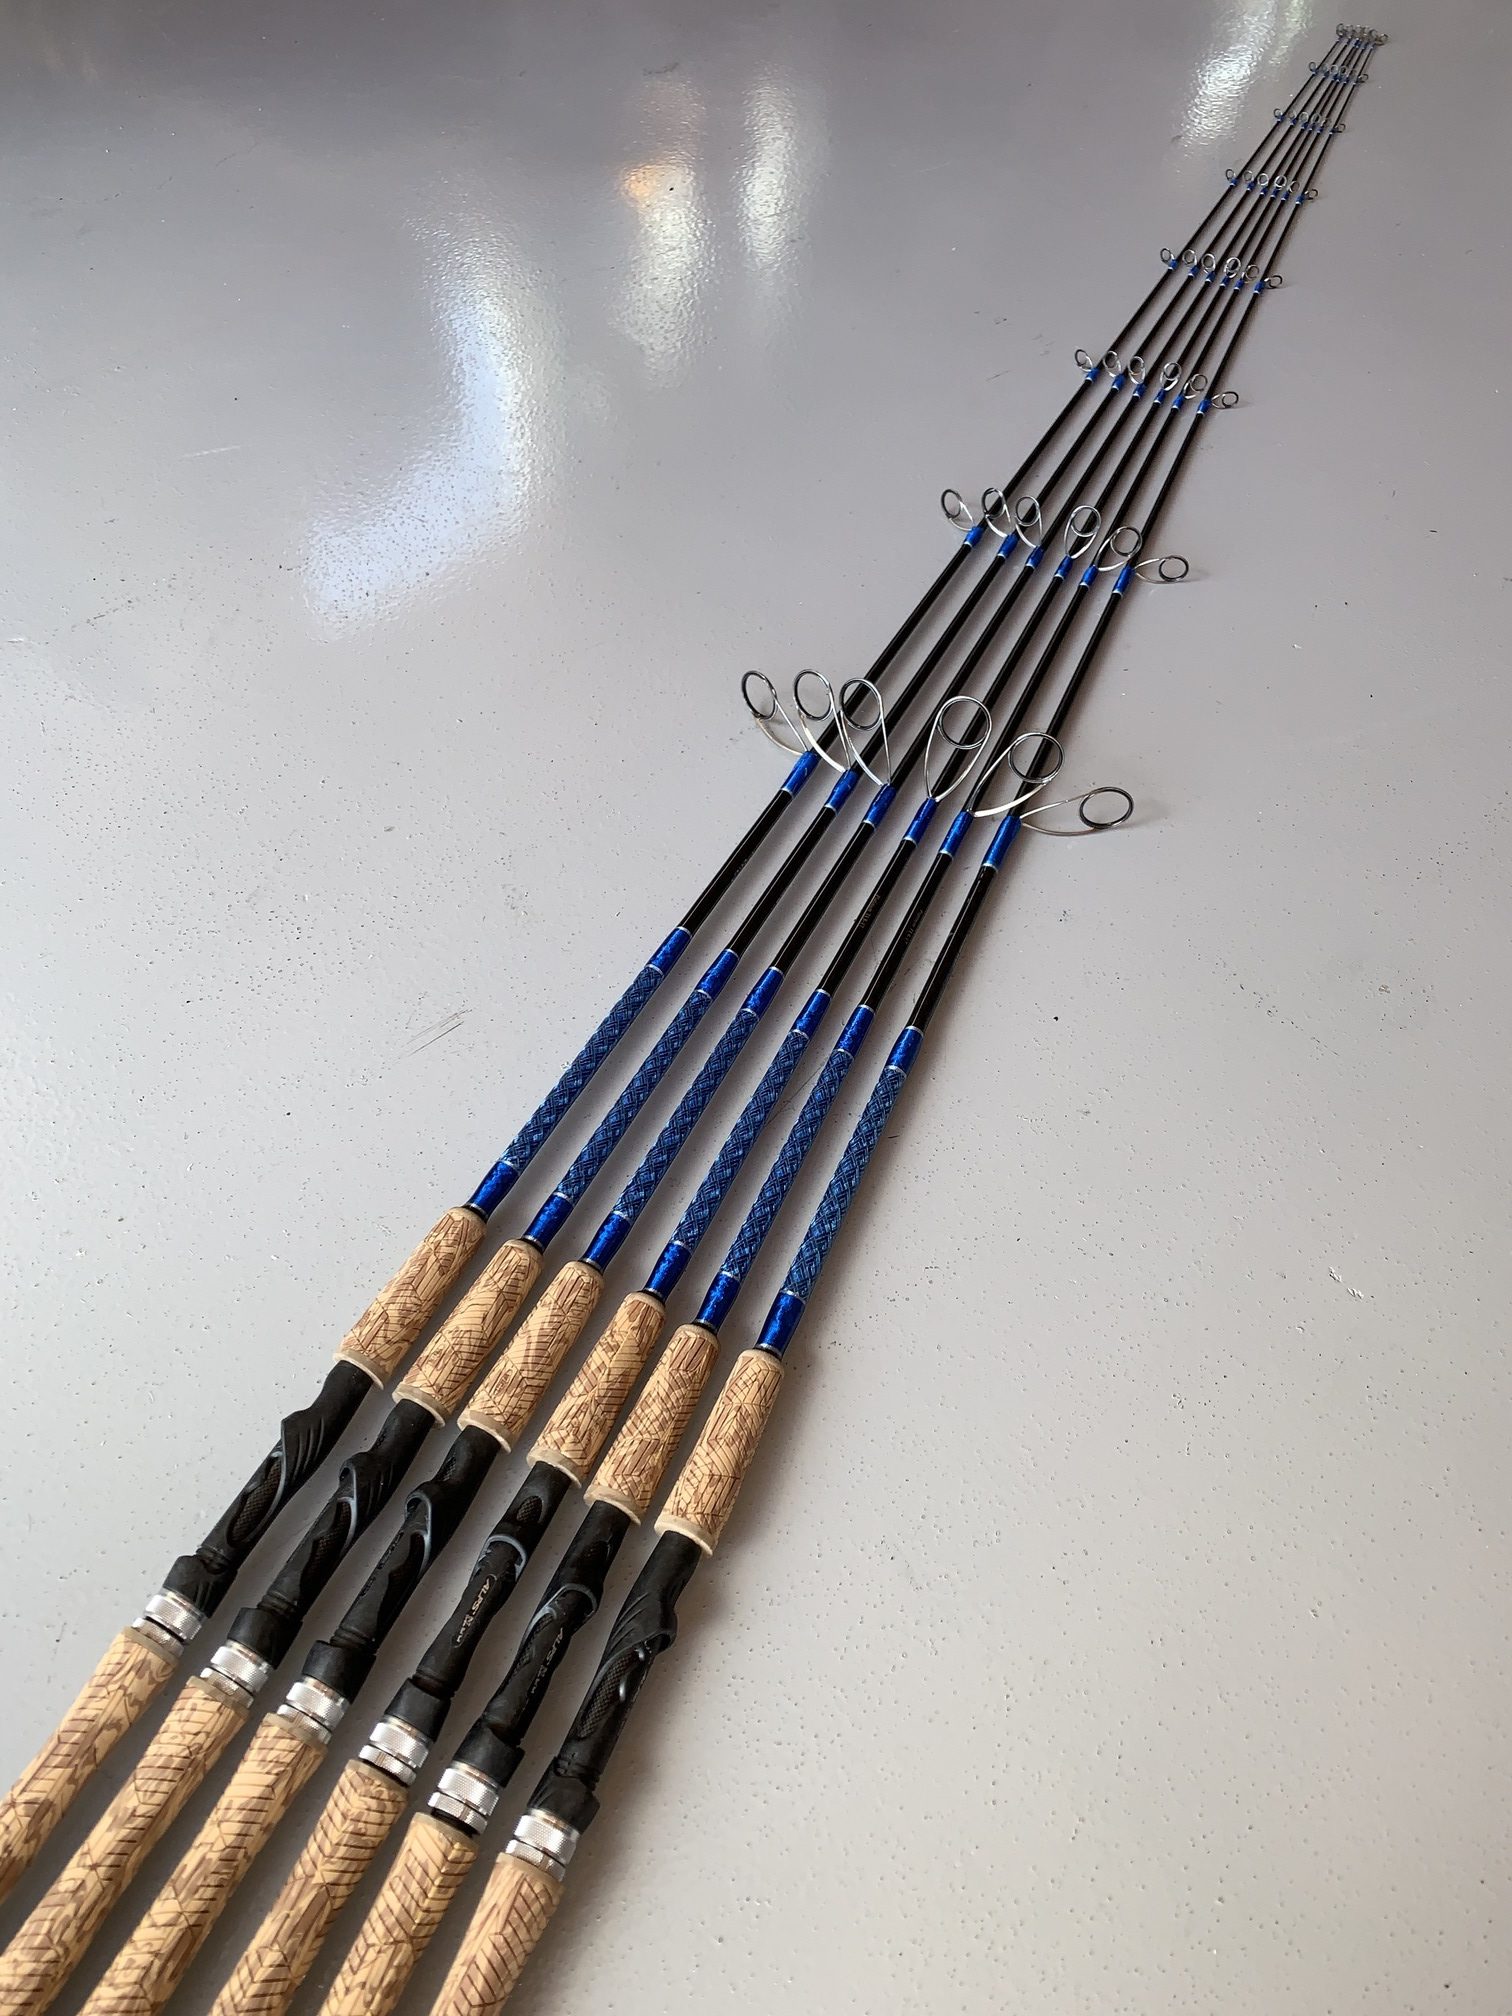 BIUTIFU BIGFISH Carp Fishing Rod 4.5/4.2/3.9/3.6/3.0m T800 Carbon